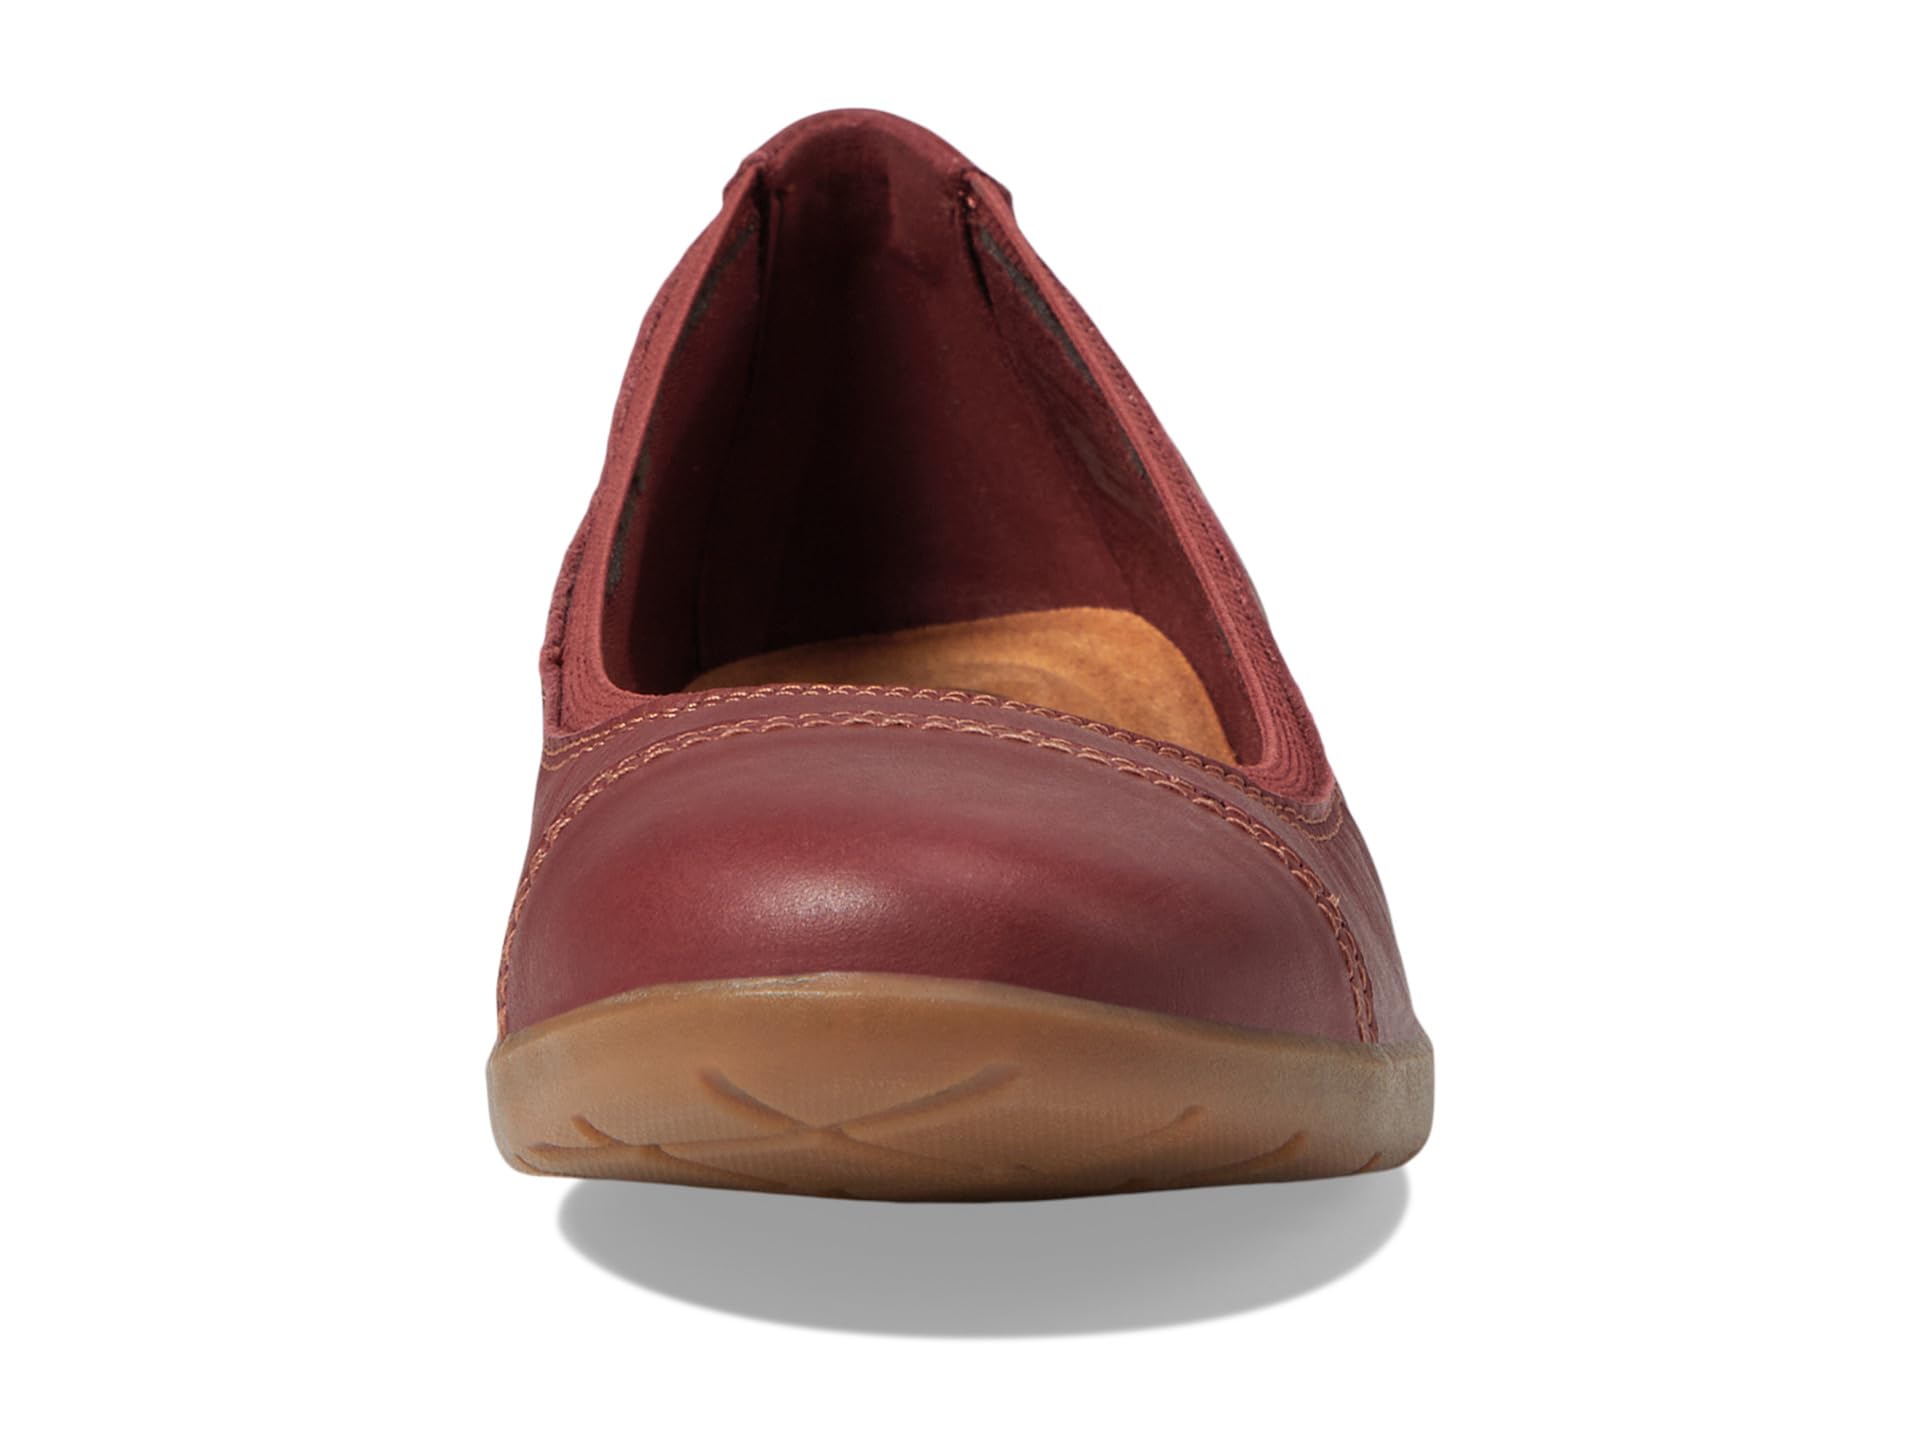 Обувь на низком каблуке Clarks Meadow Opal обувь на низком каблуке clarks carleigh jane